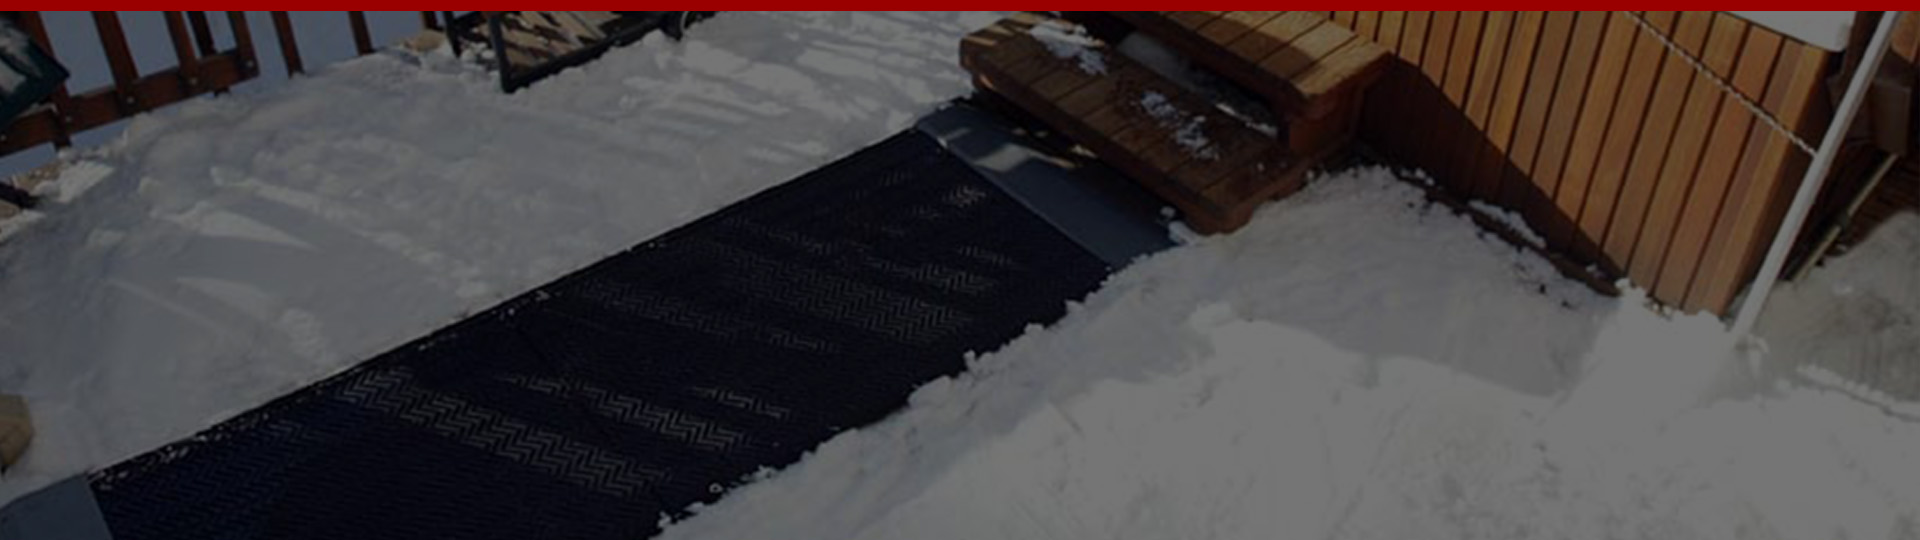 Snow melting mats banner.